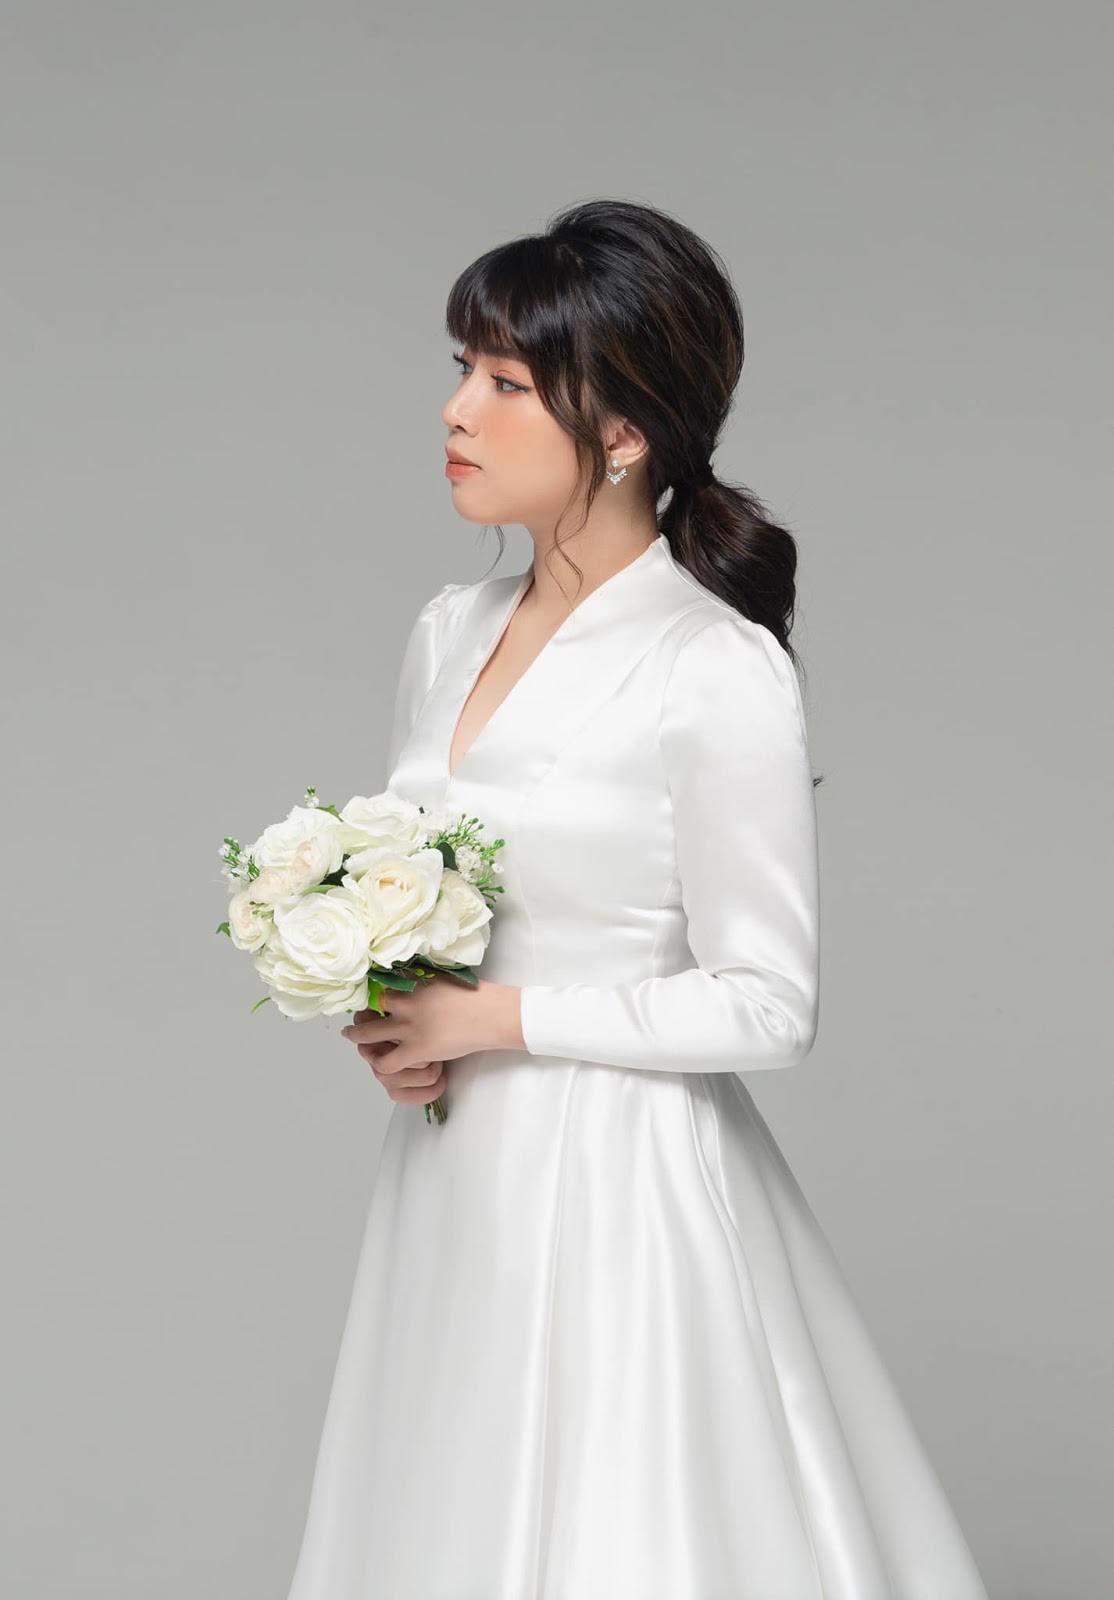 Mách nhỏ cô dâu những chiếc áo cưới đơn giản mà cực kỳ sang trọng